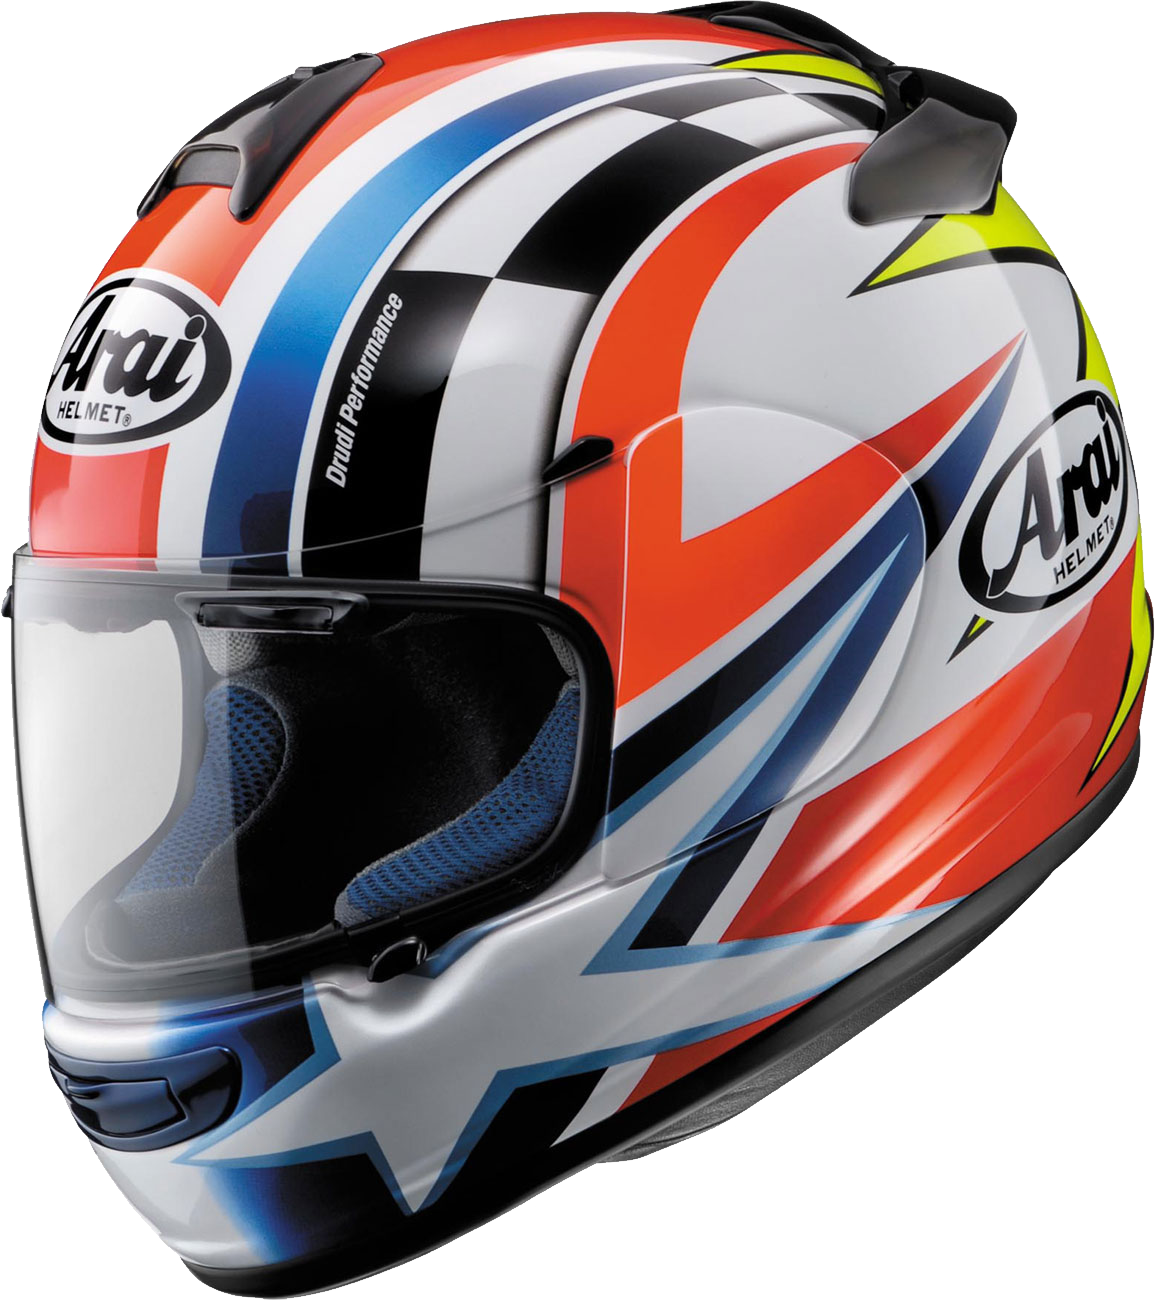 Immagine del PNG del casco del motociclo con fondo Trasparente